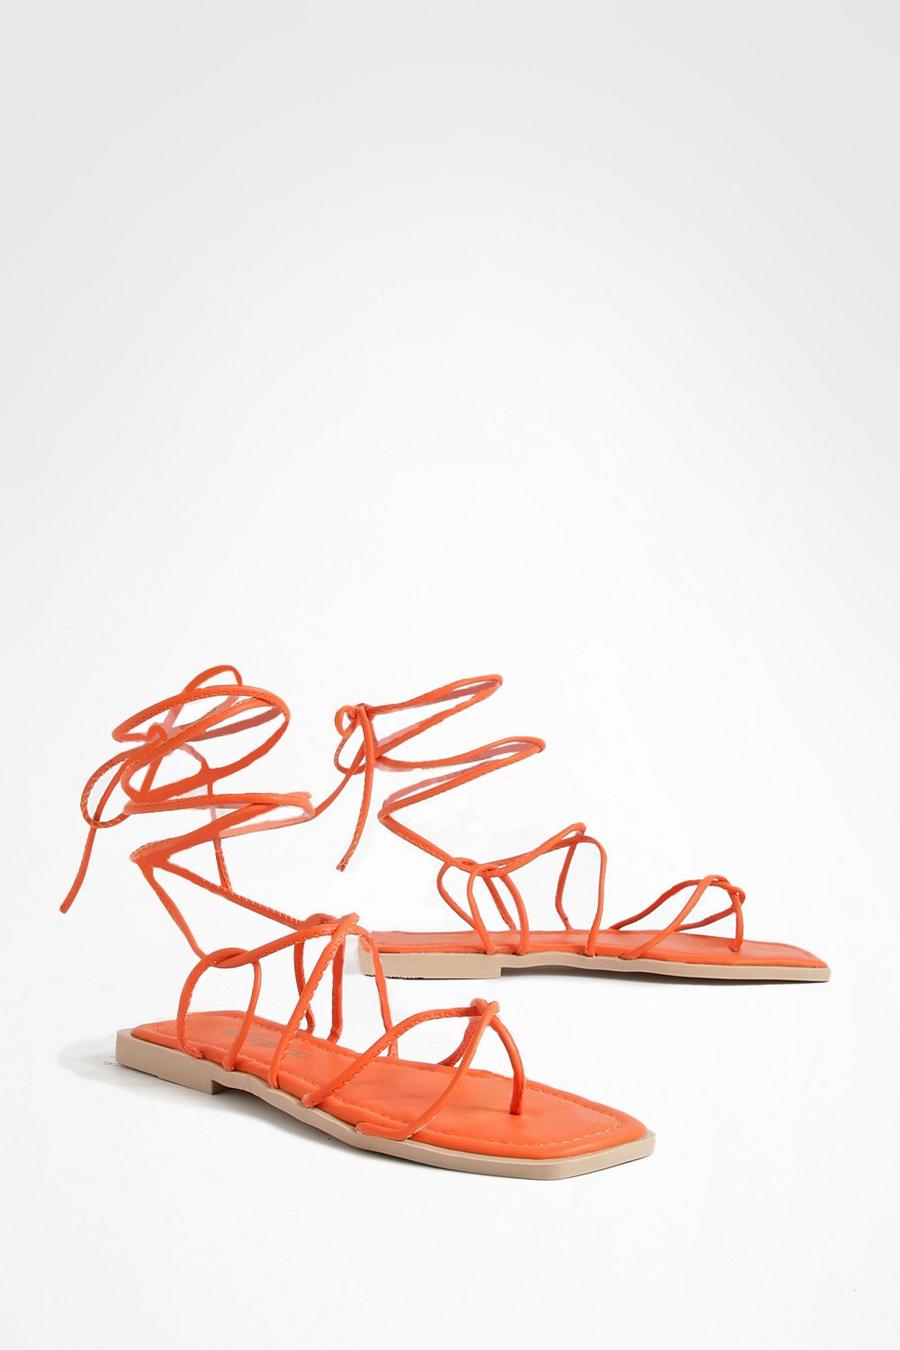 Sandali a punta quadrata con laccetti sottili e laccetti, Orange arancio